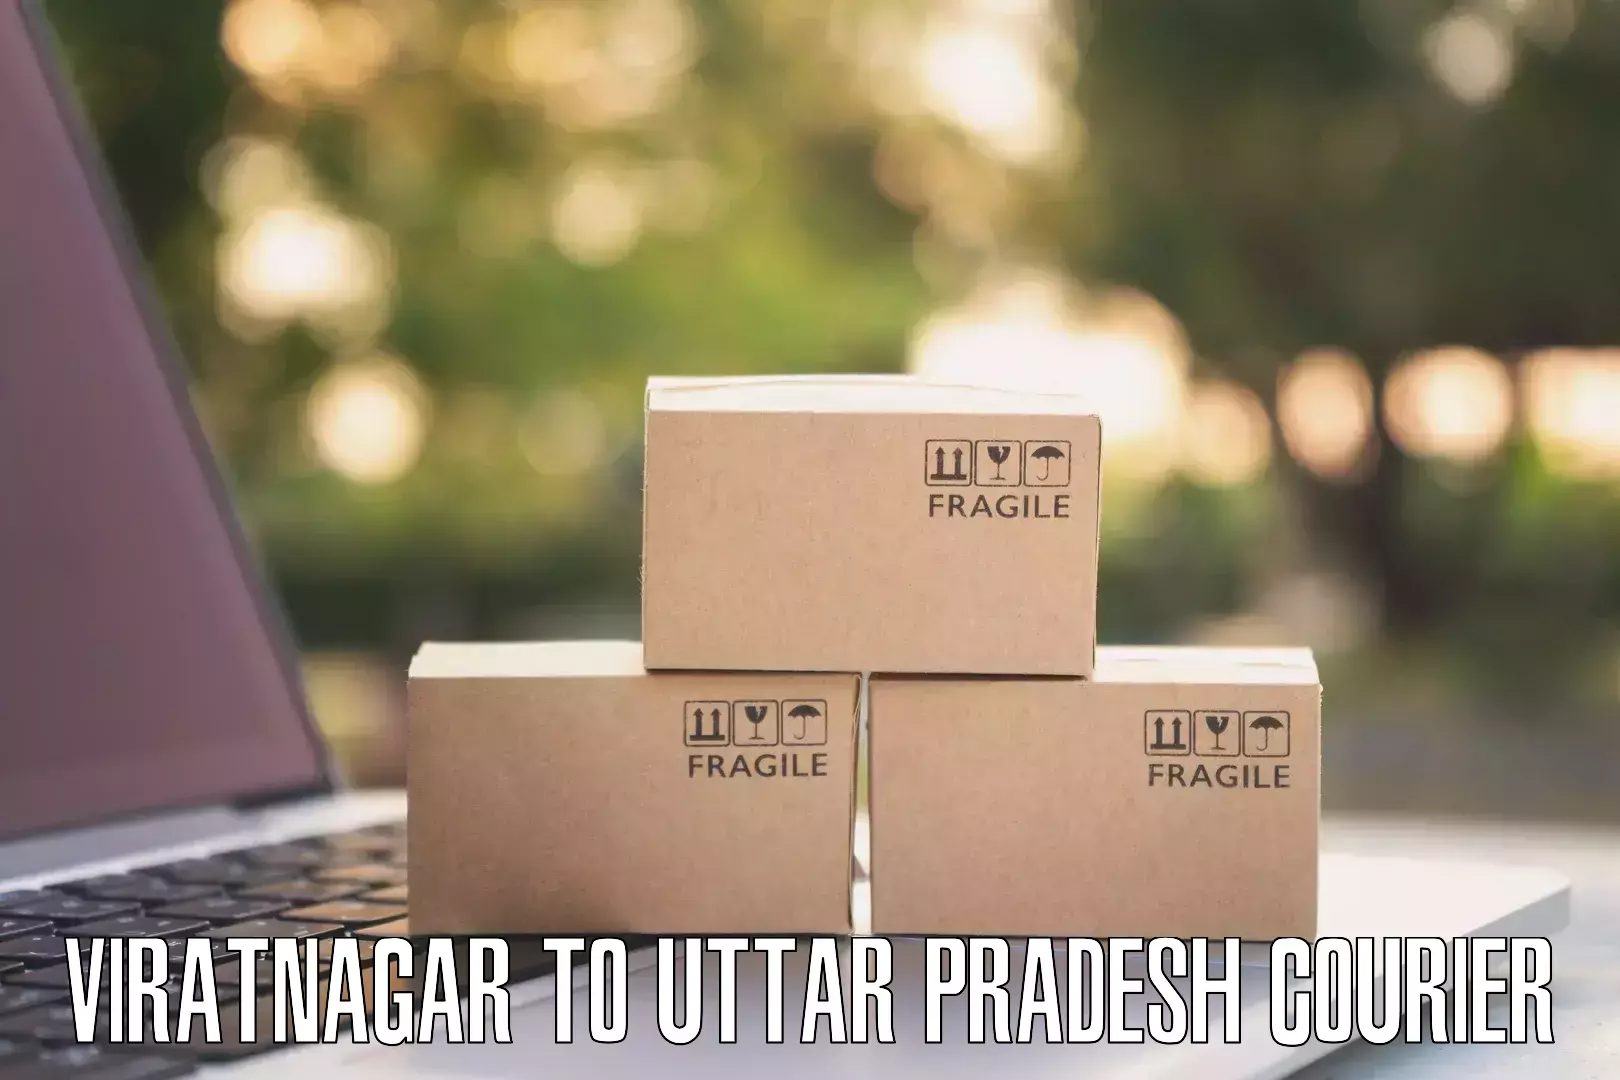 Emergency parcel delivery Viratnagar to Bansi